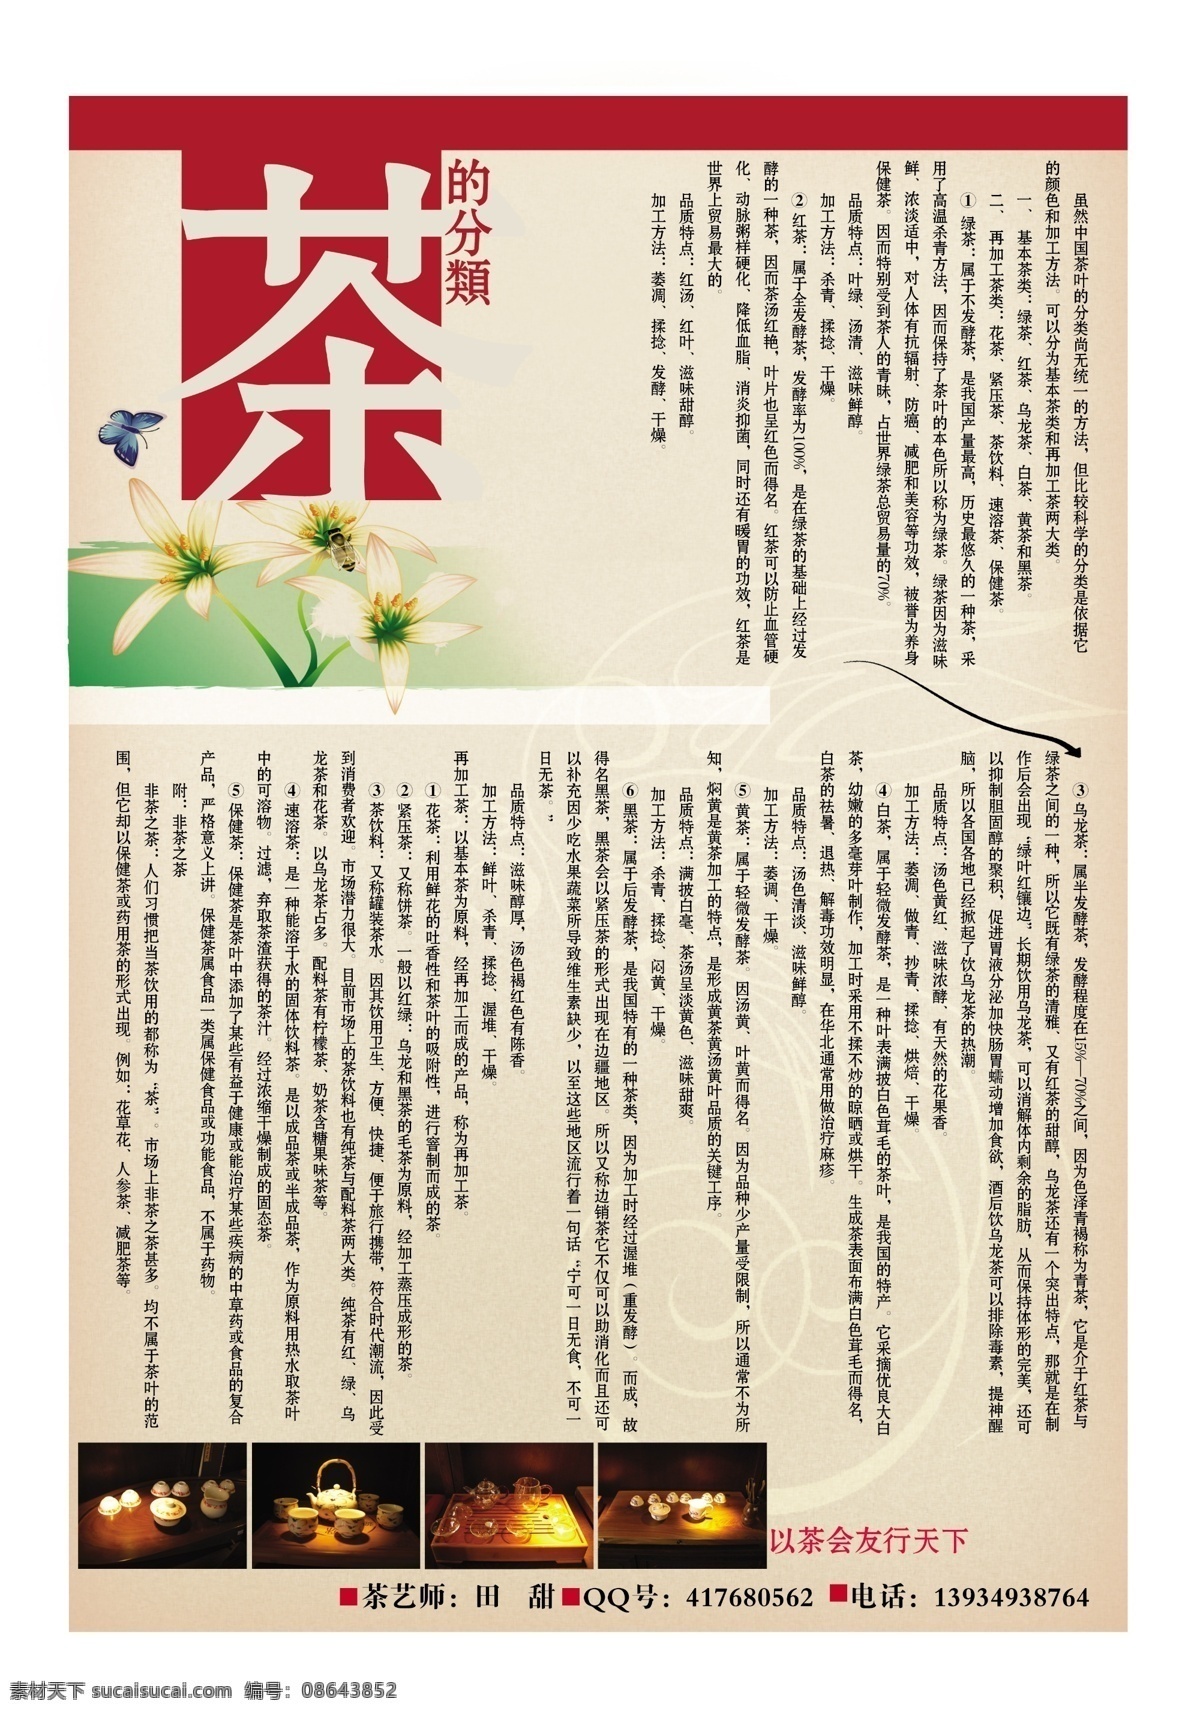 dm宣传单 单页 广告设计模板 蝴蝶 矢量花 源文件 茶庄彩页 茶的分类 茶具矢量图片 茶的介绍 加工方法 海报 宣传海报 宣传单 彩页 dm